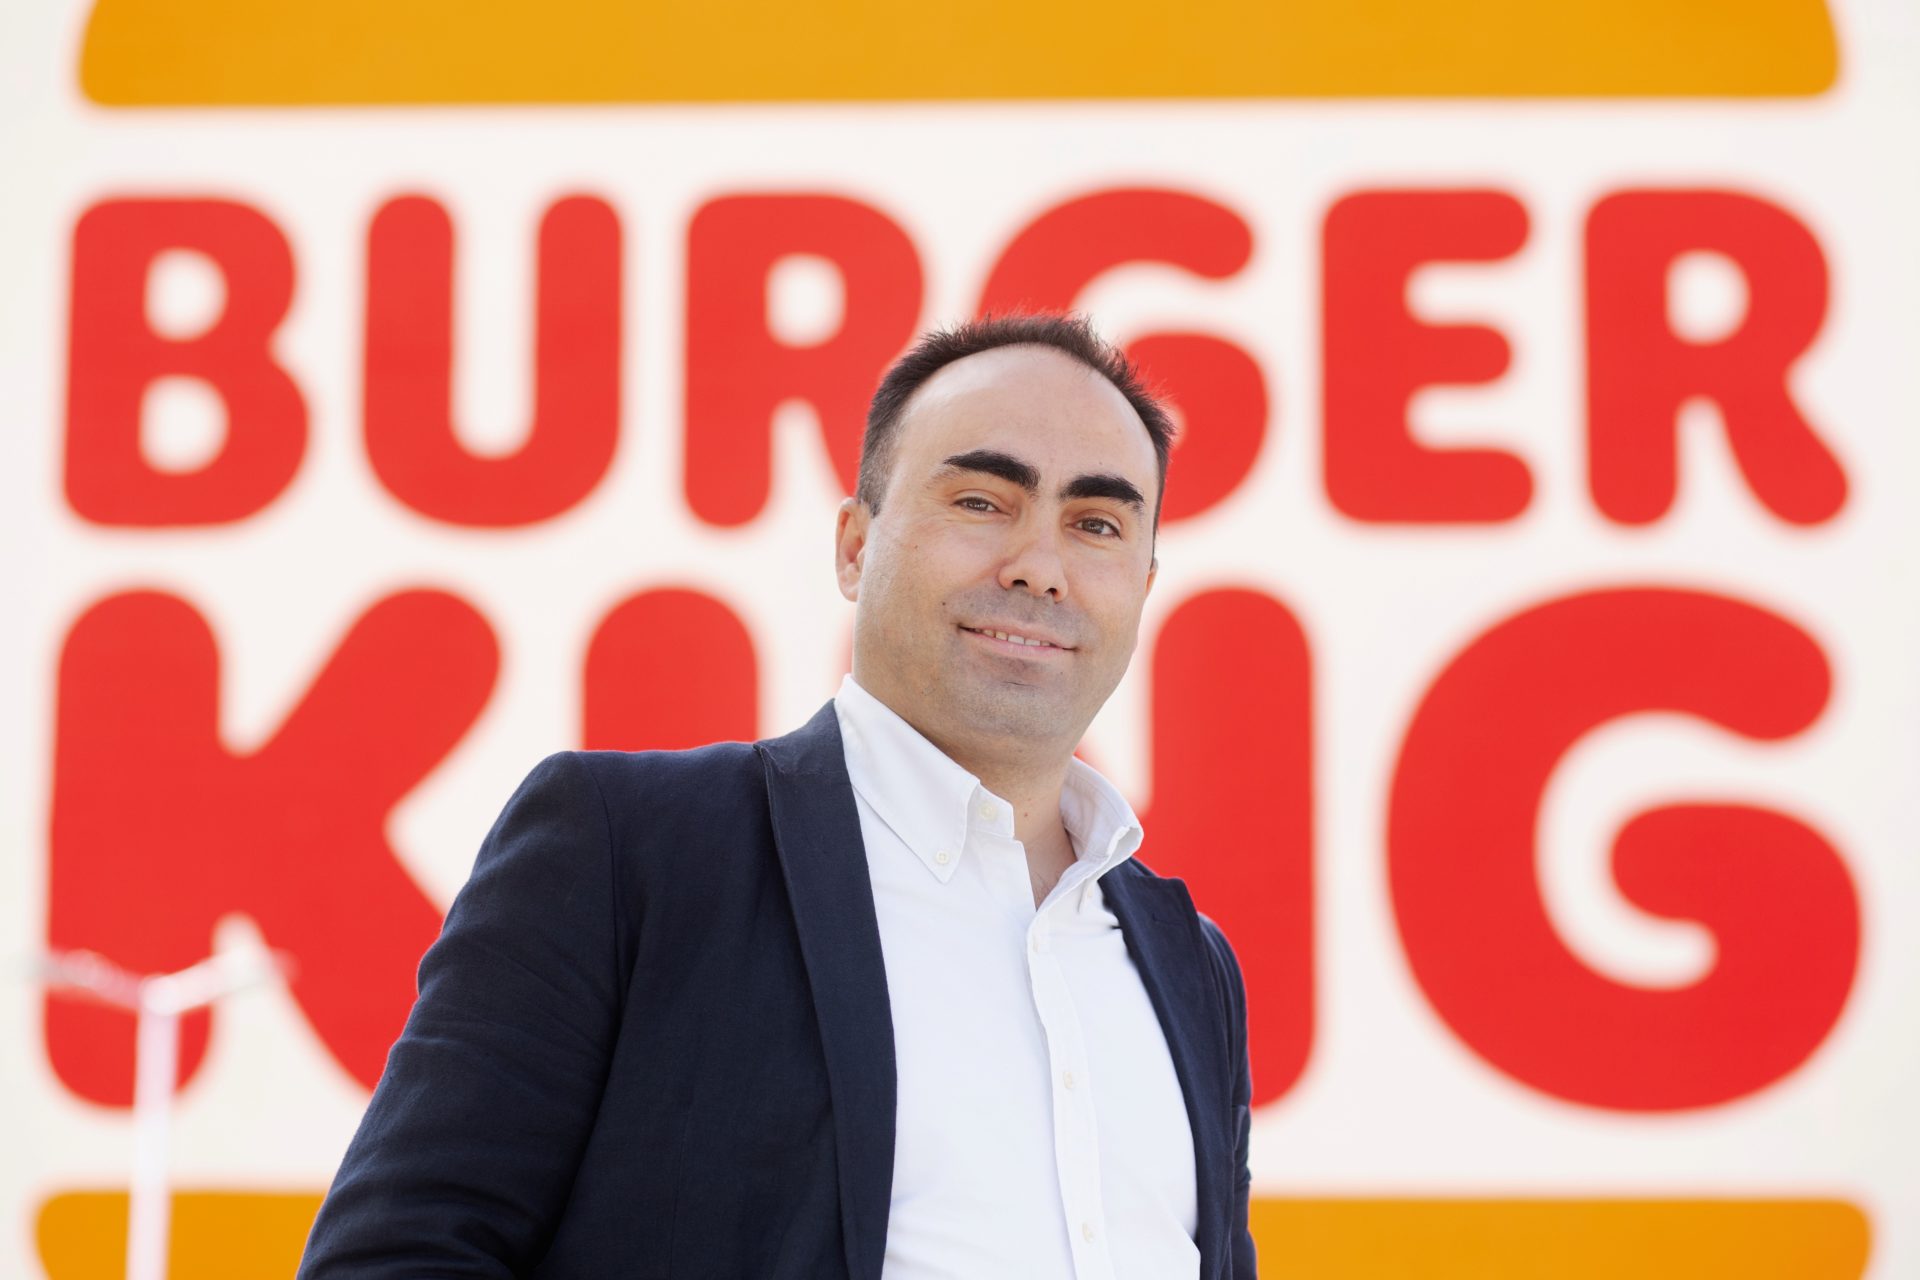 Burger King ha anunciado el nombramiento de Jorge Carvalho como director general de la cadena en España y Portugal.